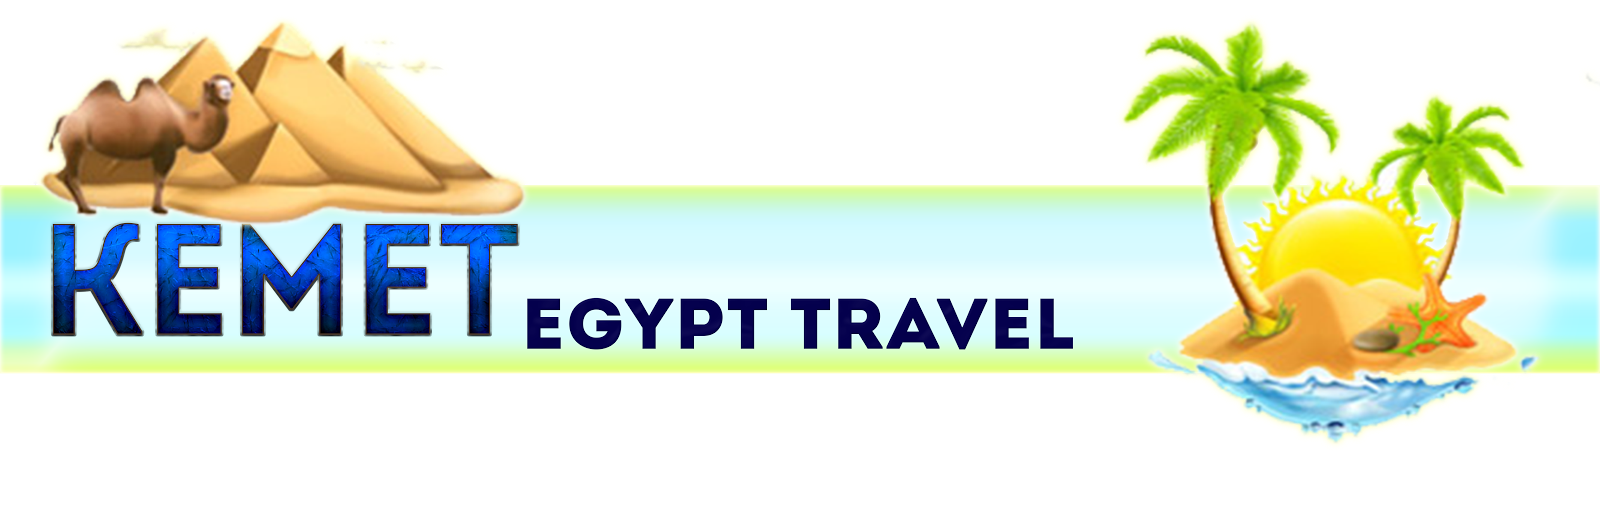 Kemet Egypt Travel